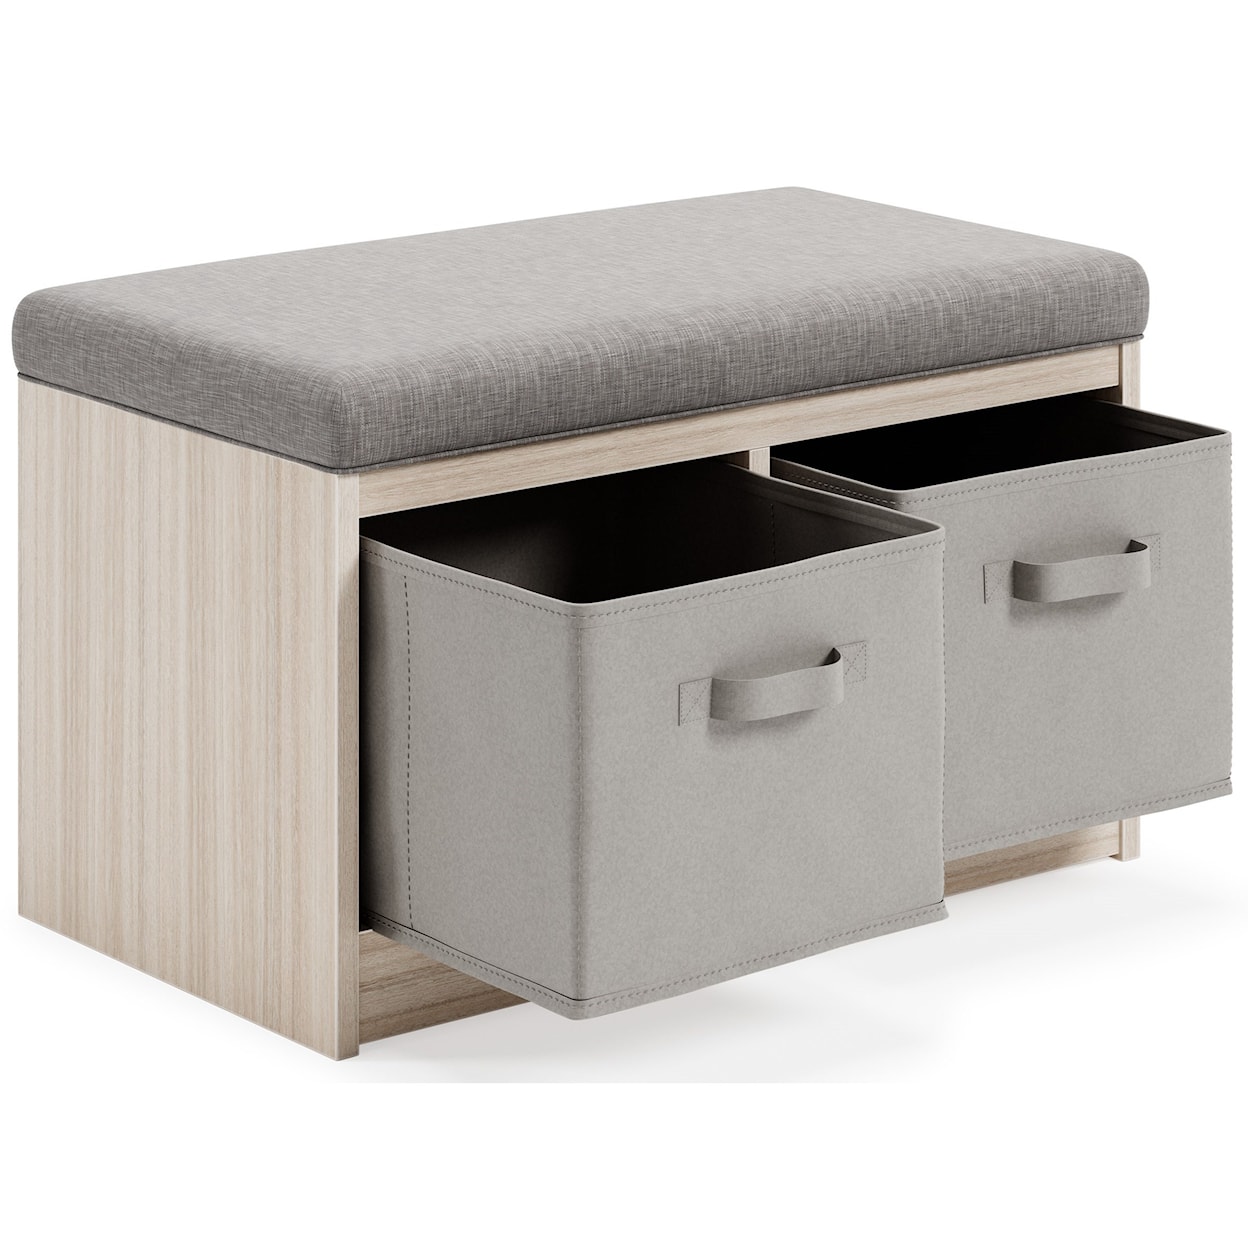 Ashley Furniture Signature Design Blariden Storage Bench